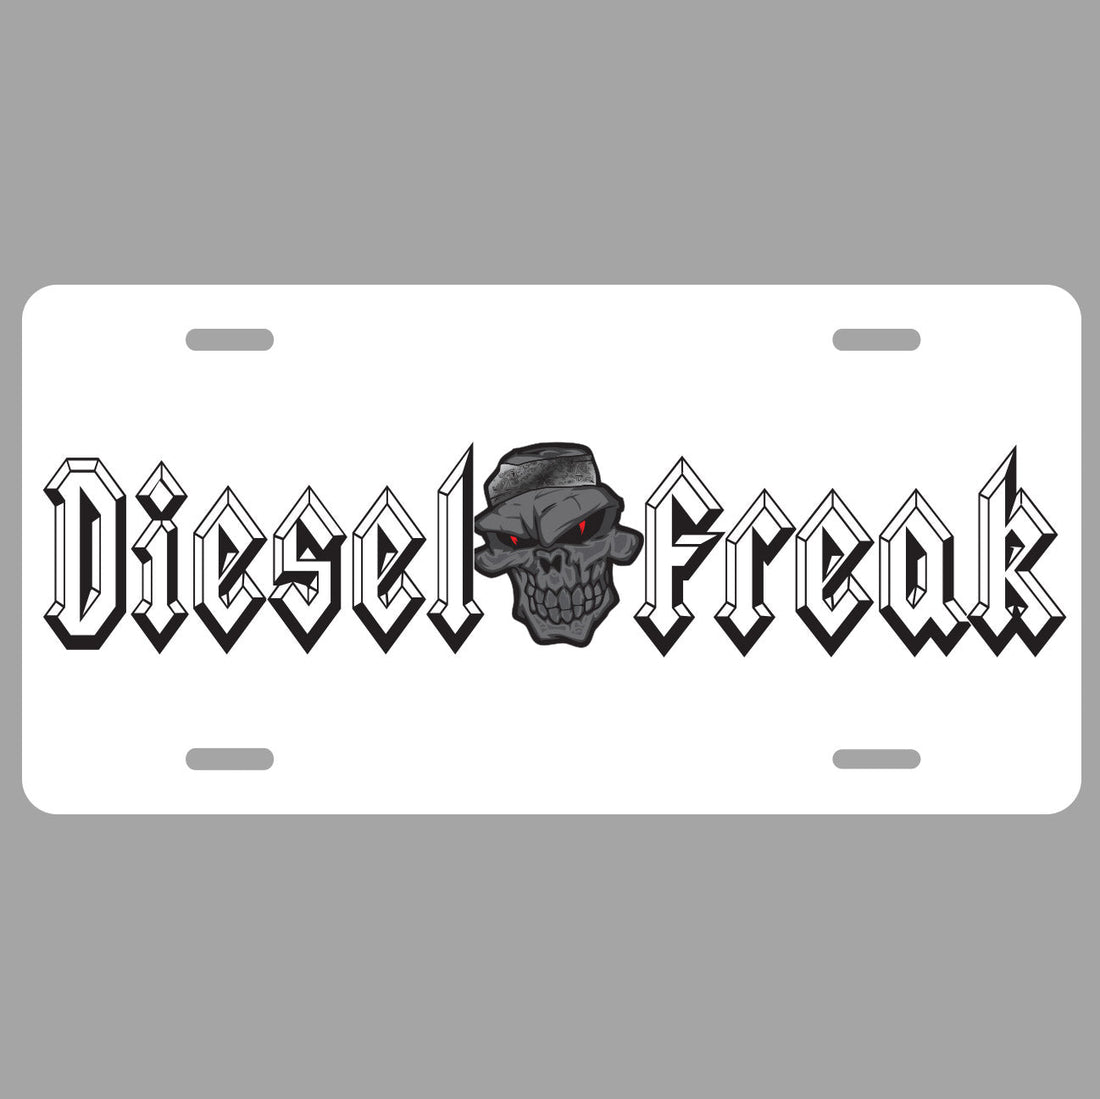 Diesel Freak White Blackout License Plate - Diesel Freak